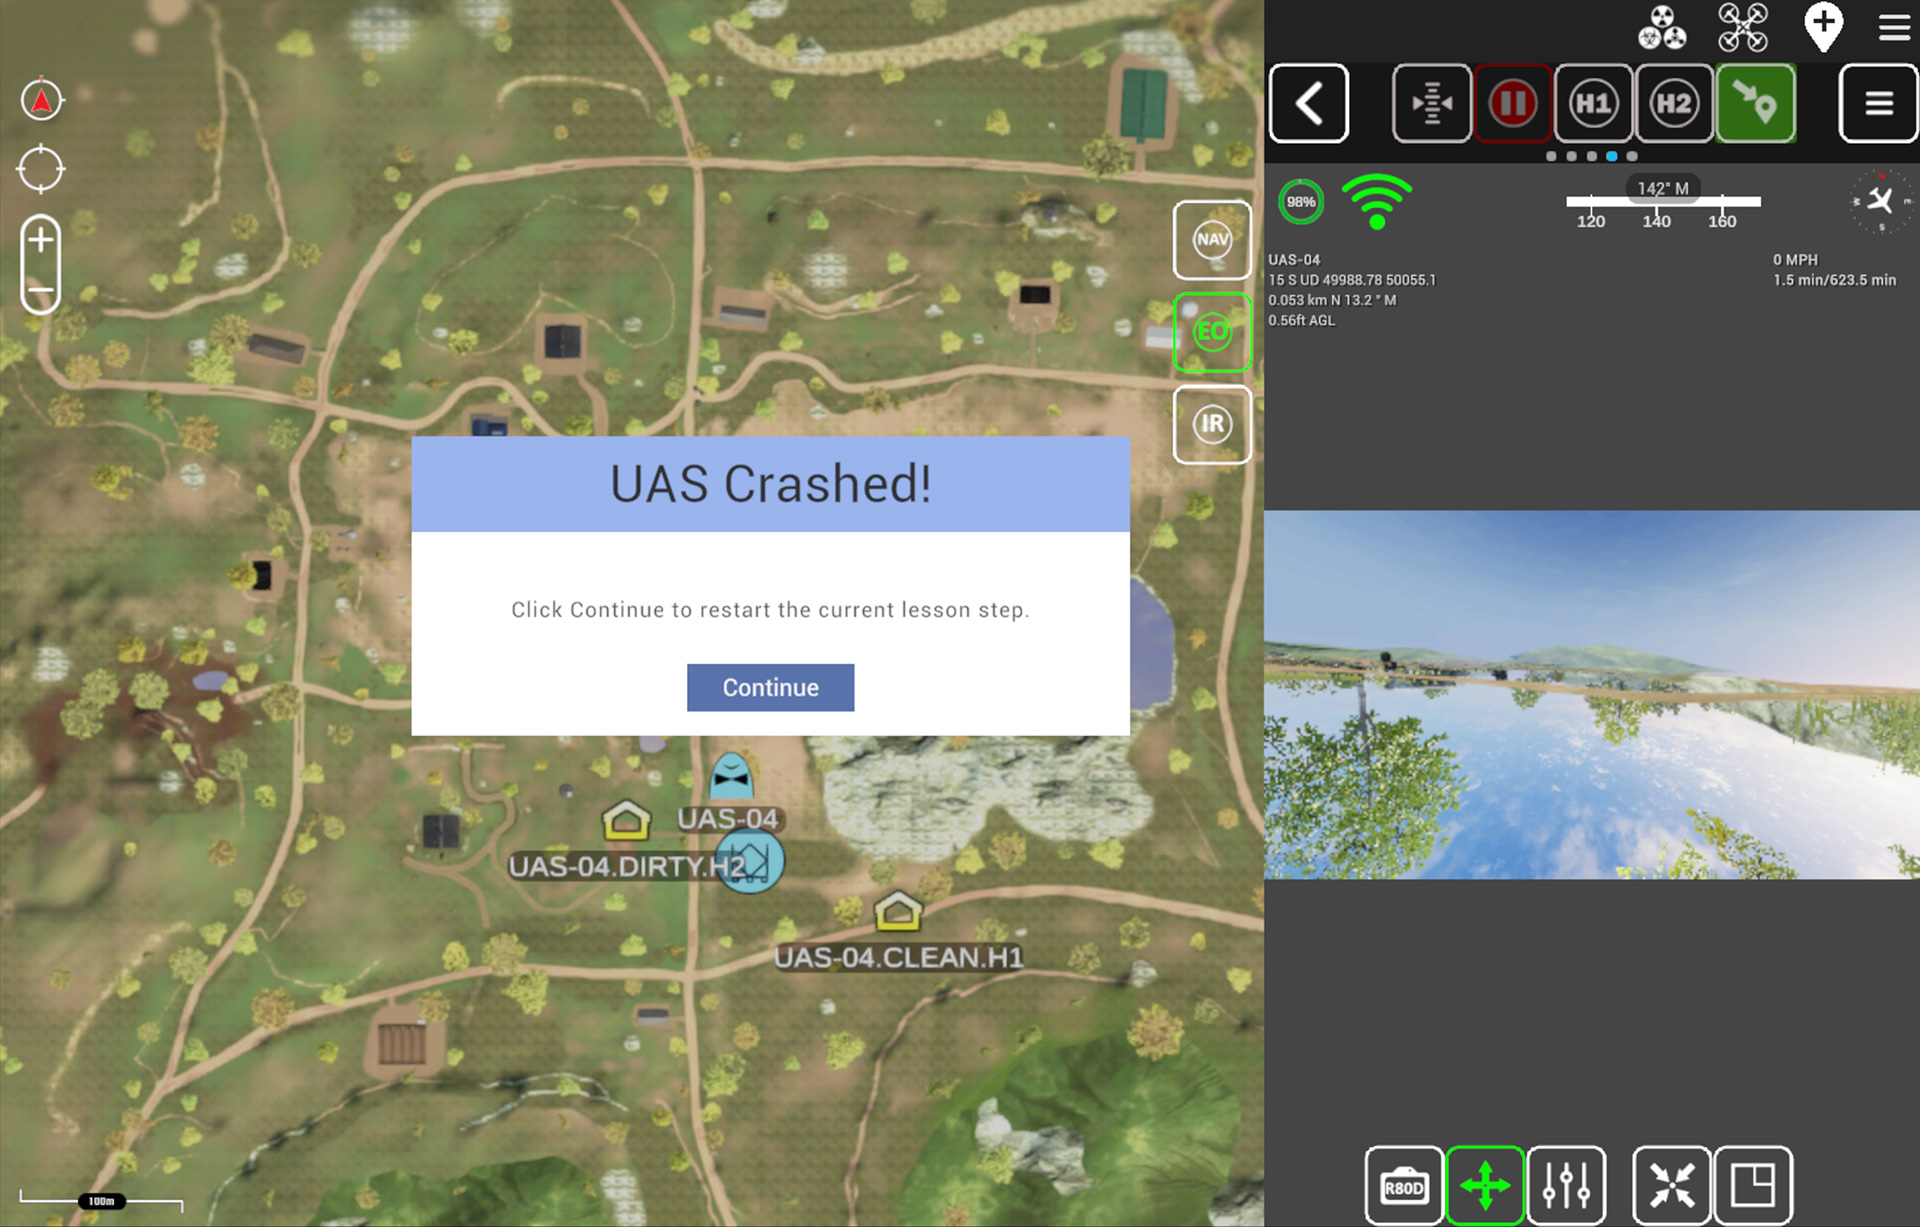 Simulation-Based-Training-for-UAS-Crash